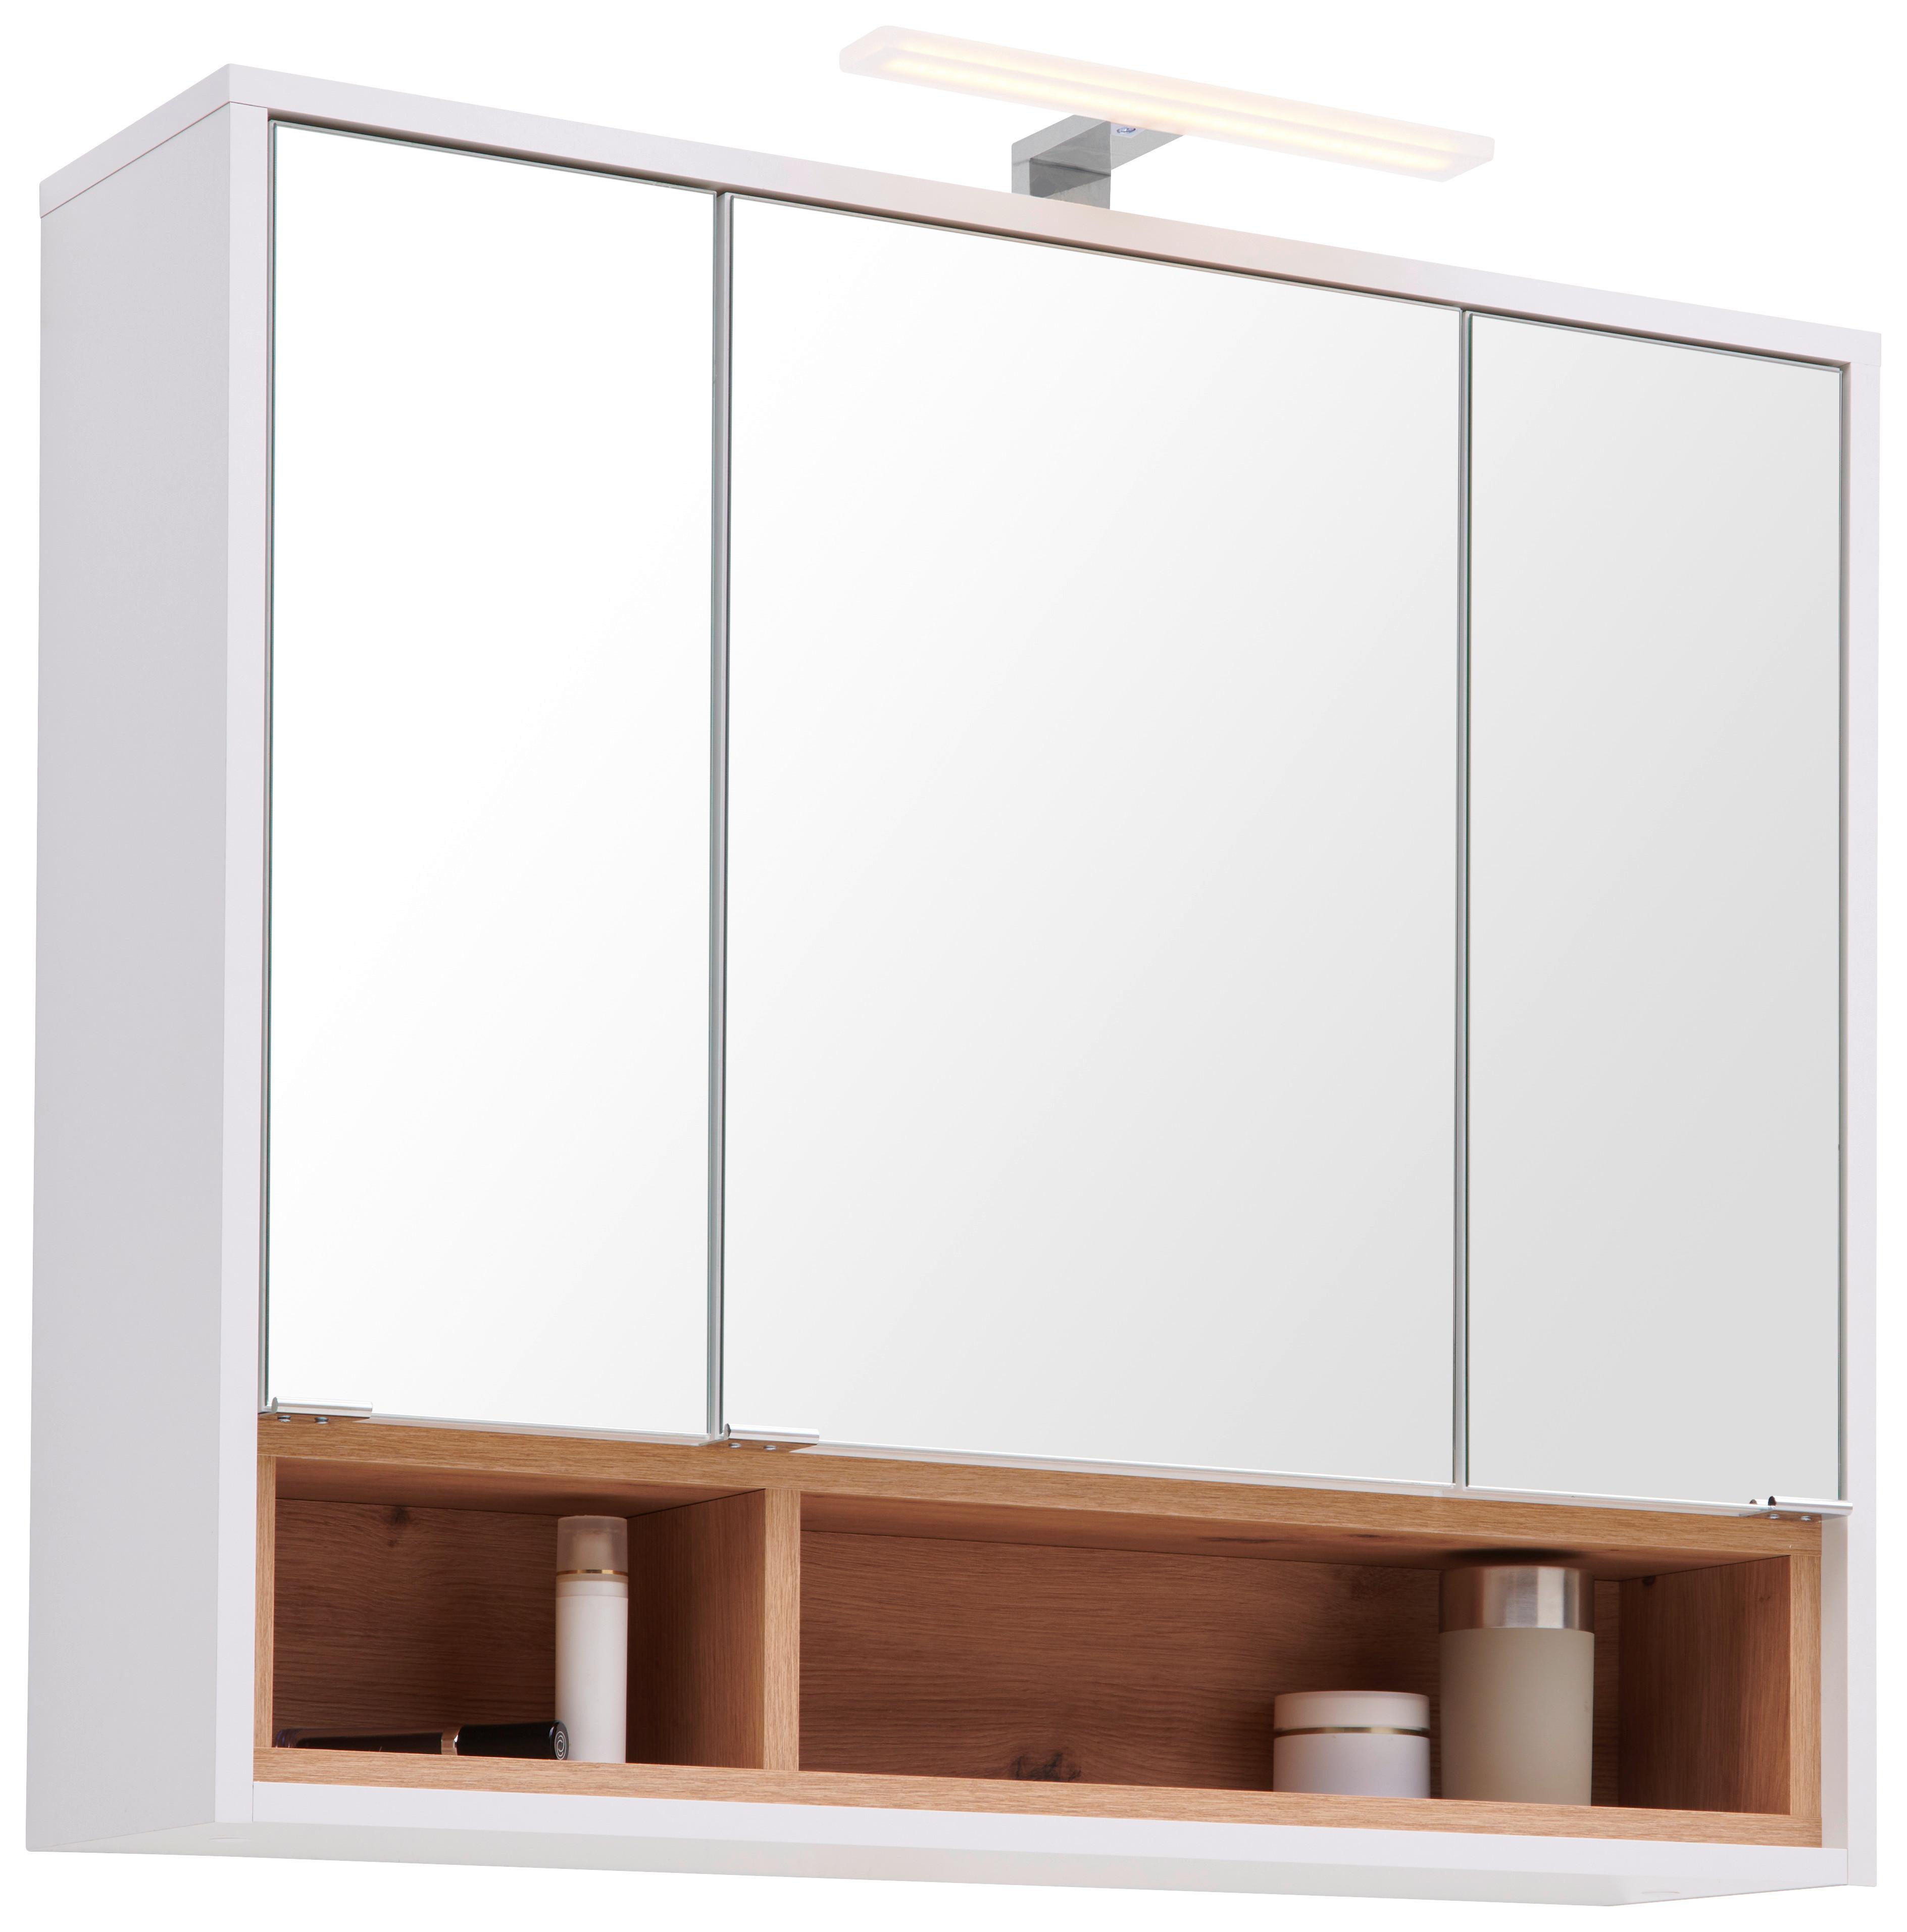 Skříňka Se Zrcadlem Milano - bílá/barvy chromu, Moderní, kov/kompozitní dřevo (80/72/23cm)